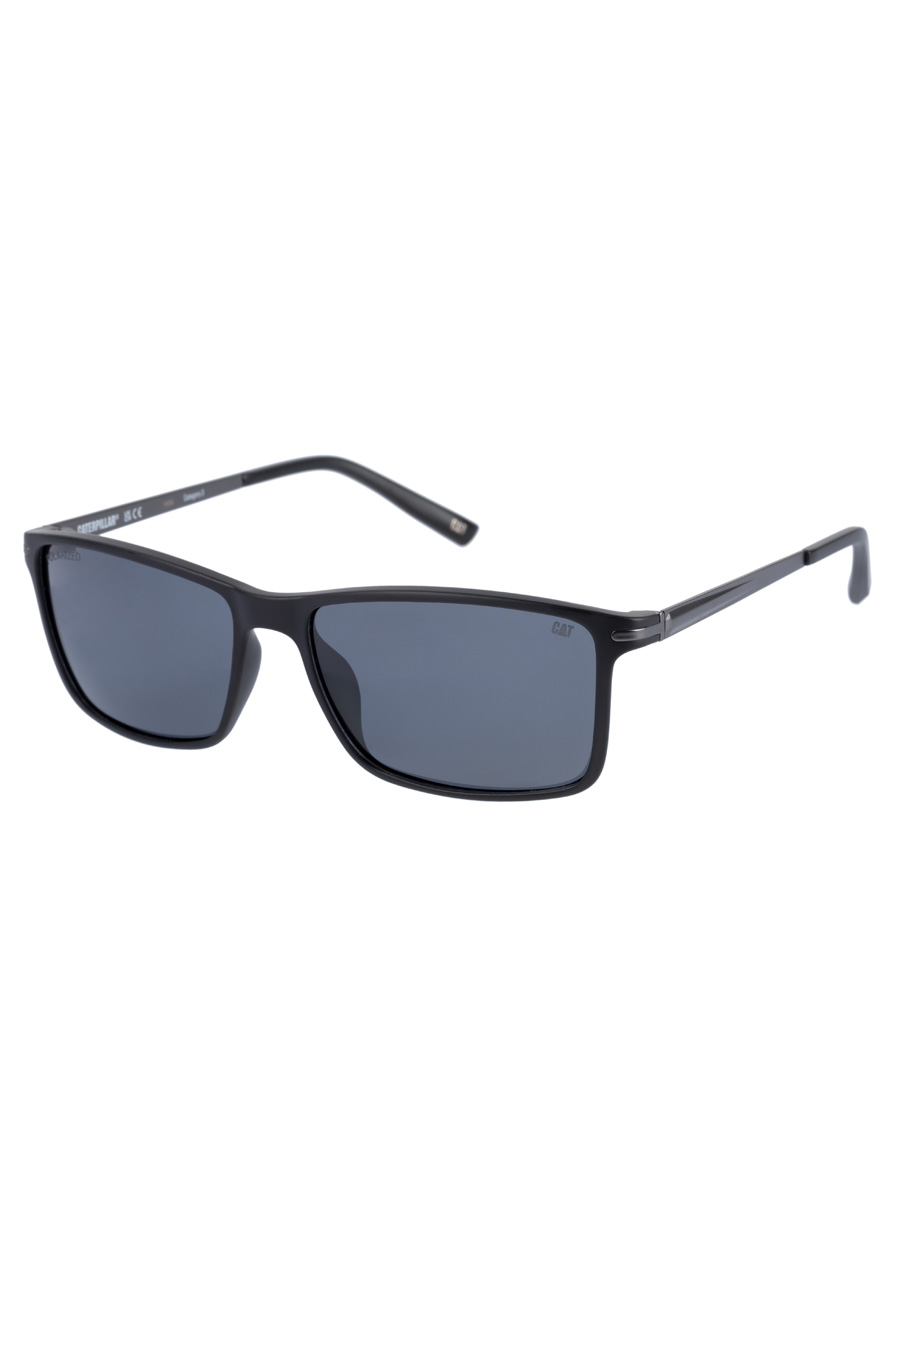 Sunglasses CAT CPS-8506-104P